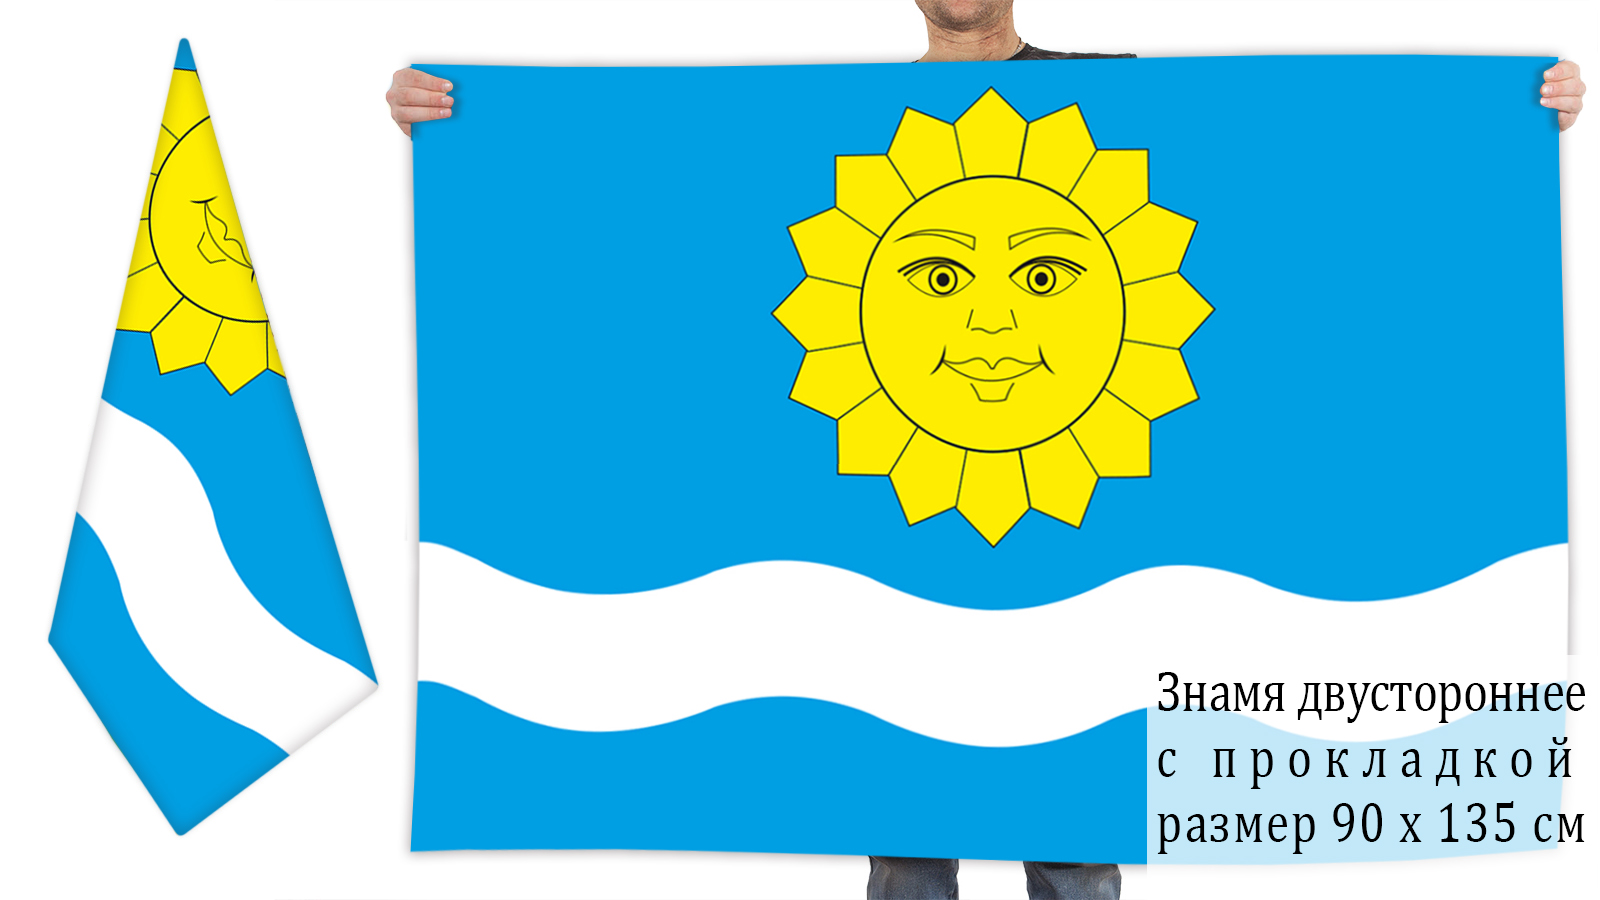  двусторонний флаг Истринского района,